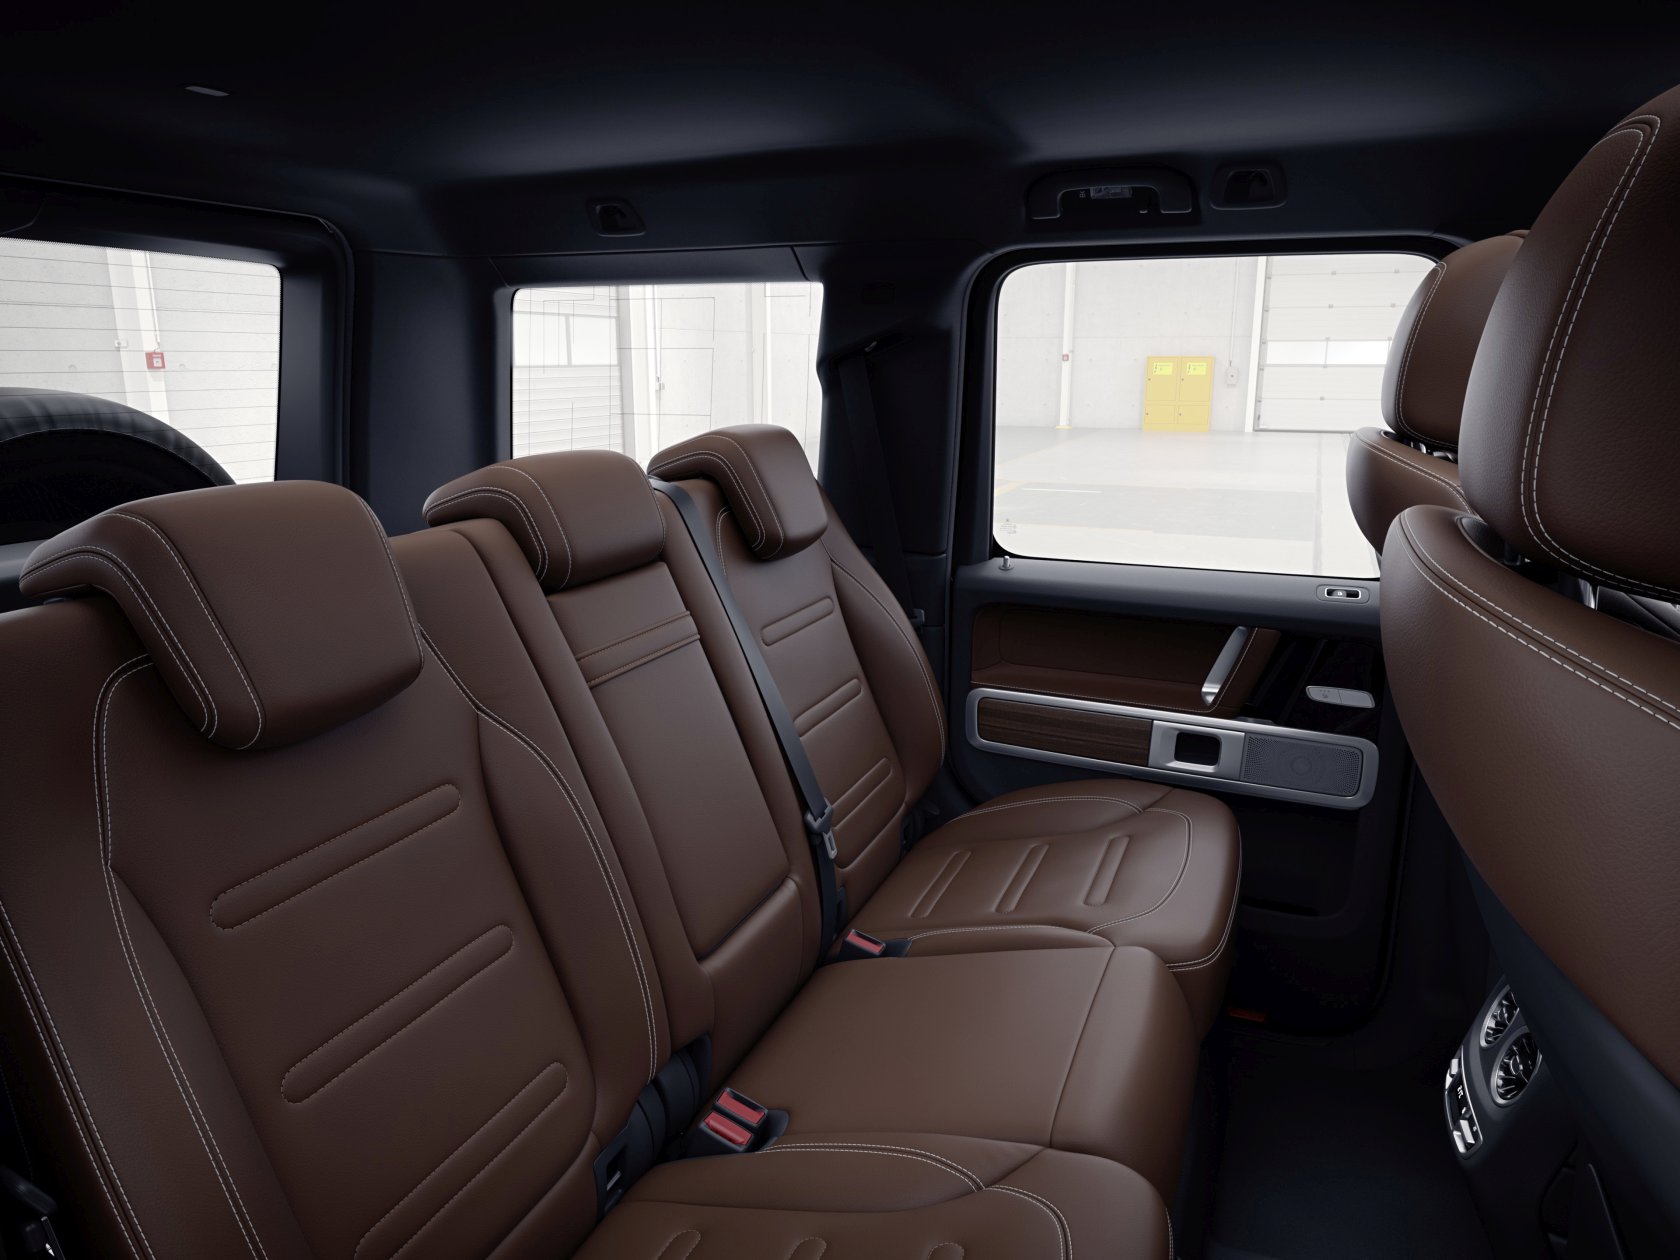 Mercedes G-Klasse mit personalisierter Innenausstattung: Hier wird